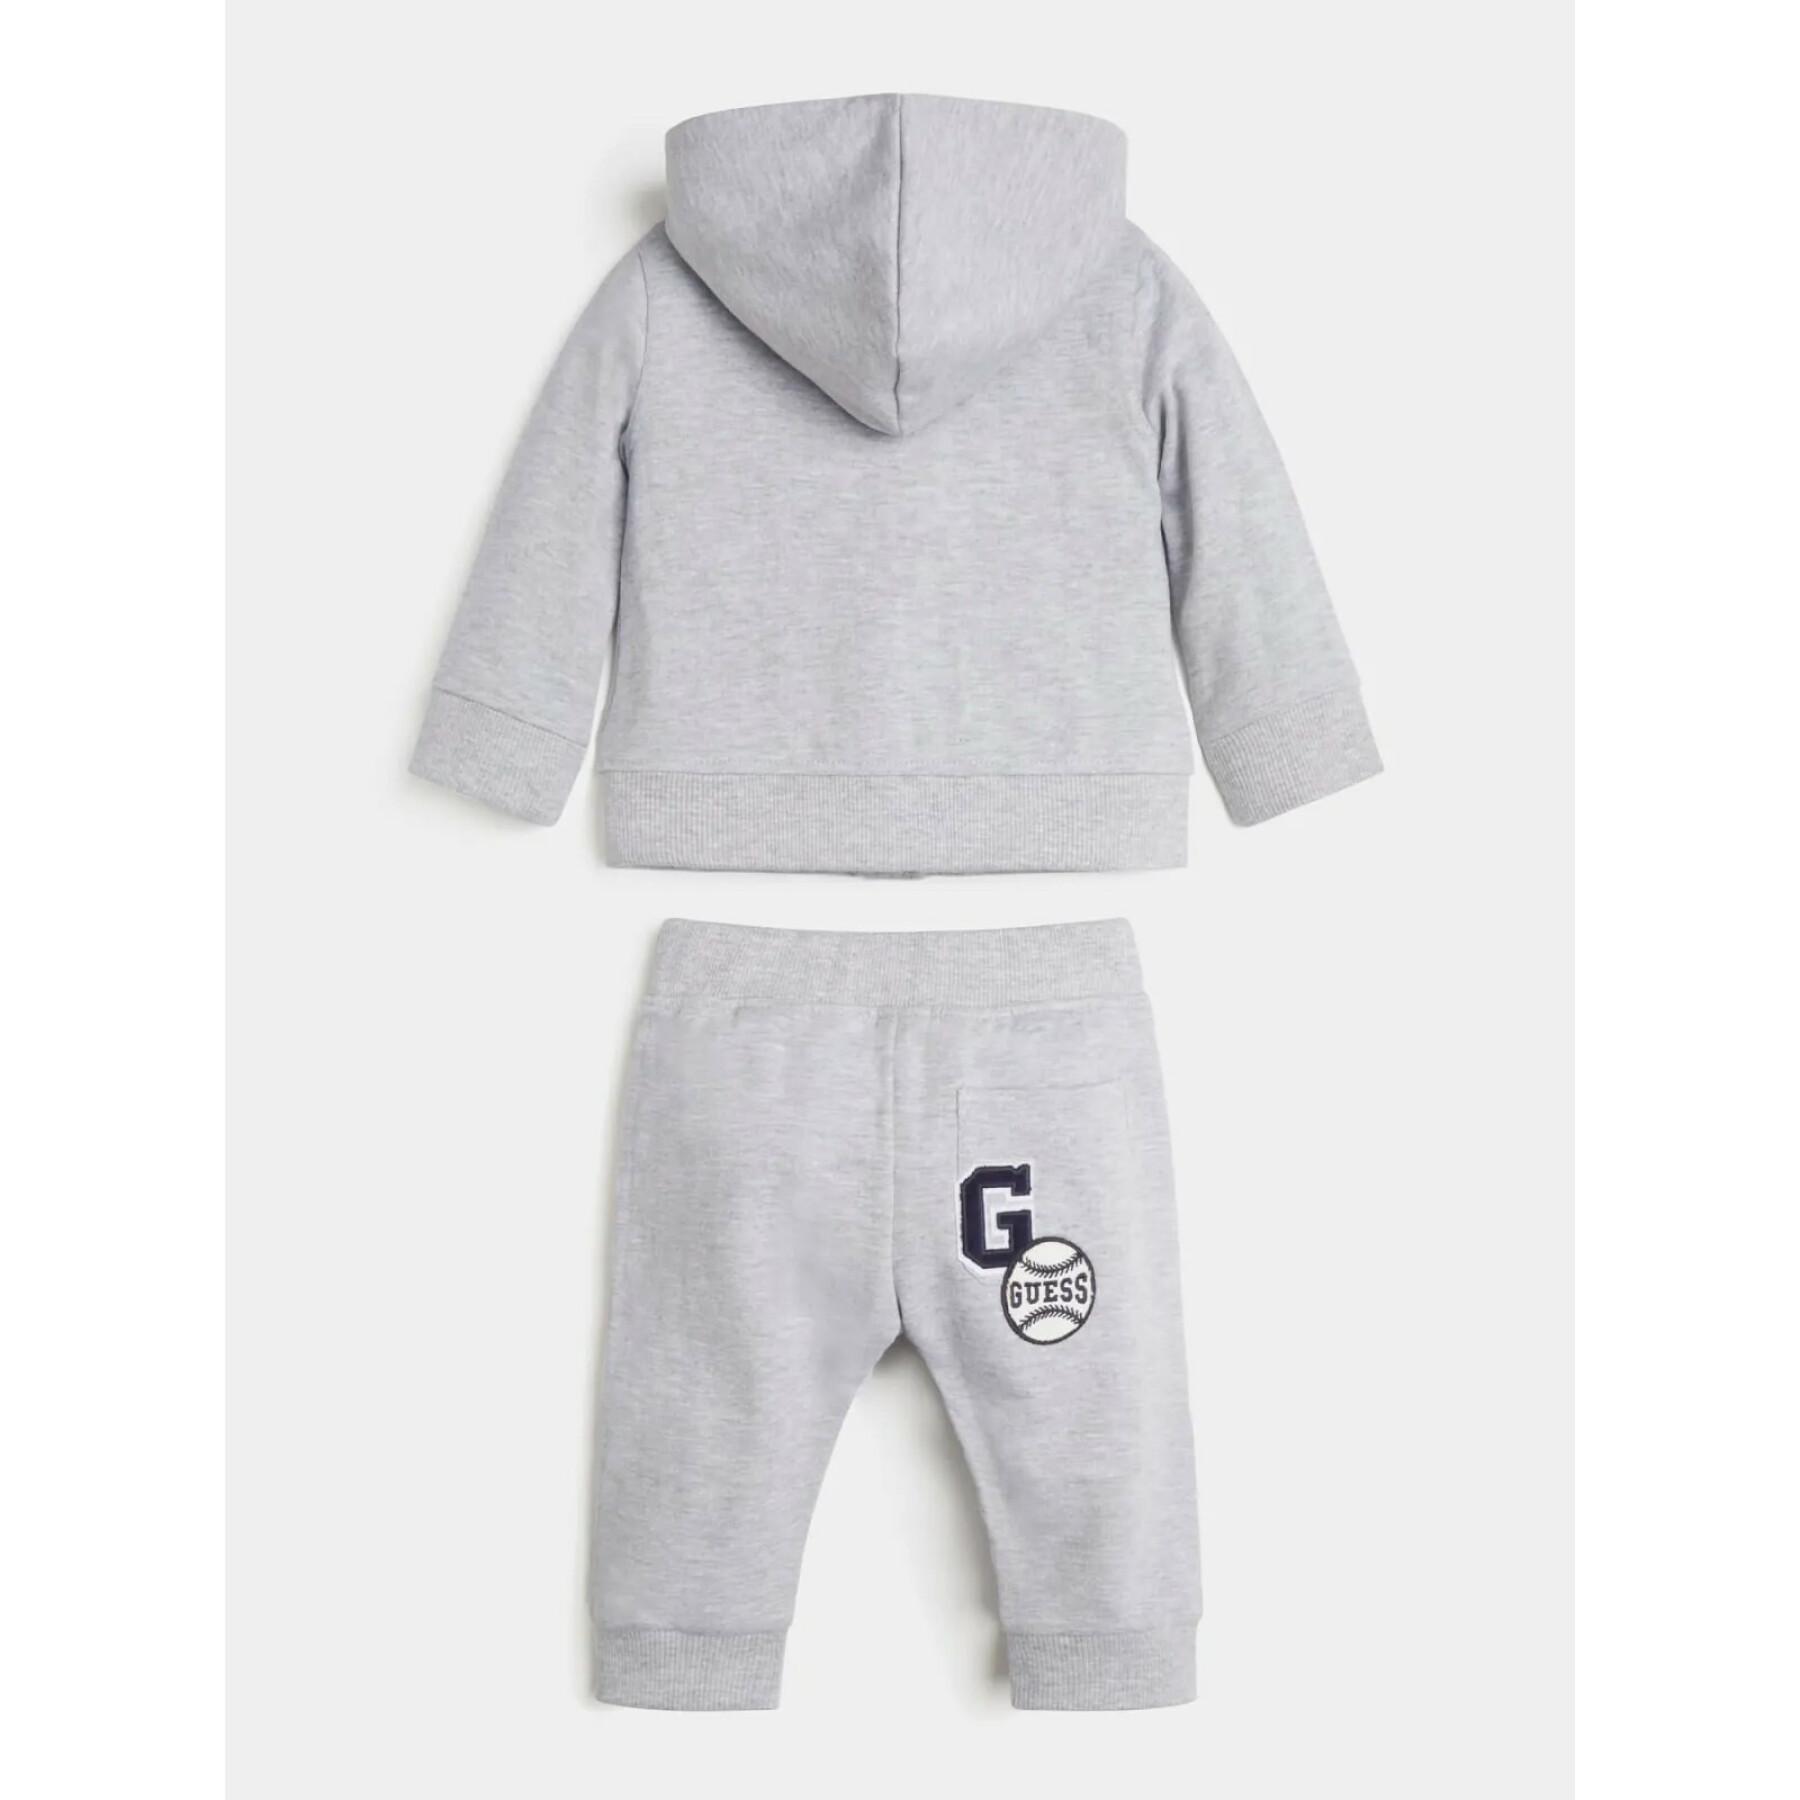 Baby boy zip hoodie + jogging set Guess Active